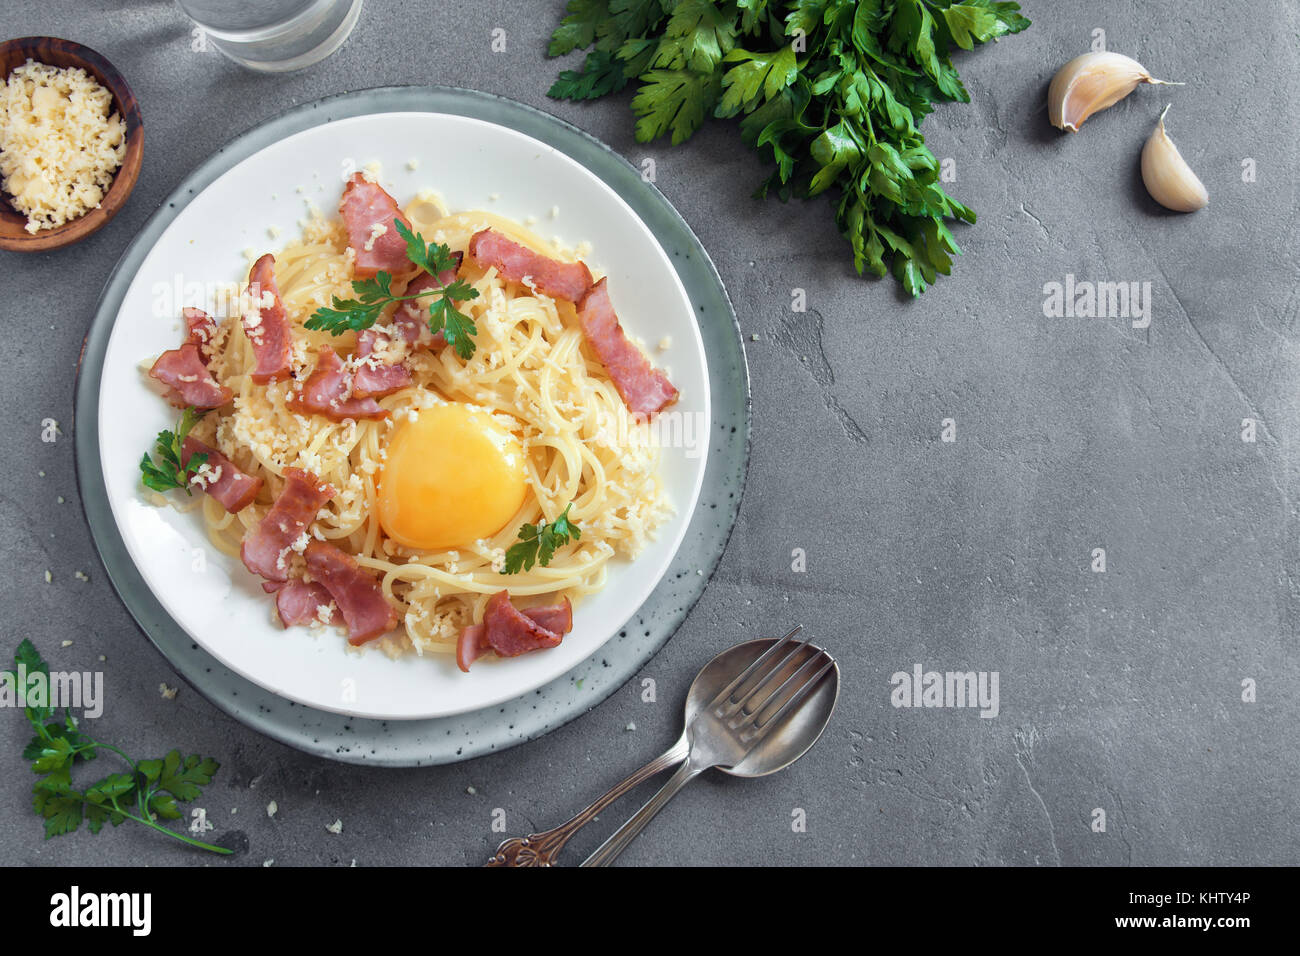 Spaghetti Carbonara Nudeln mit Ei, Speck und Parmesan - Hausgemachte gesunde italienische Pasta auf grauem Beton Hintergrund Stockfoto